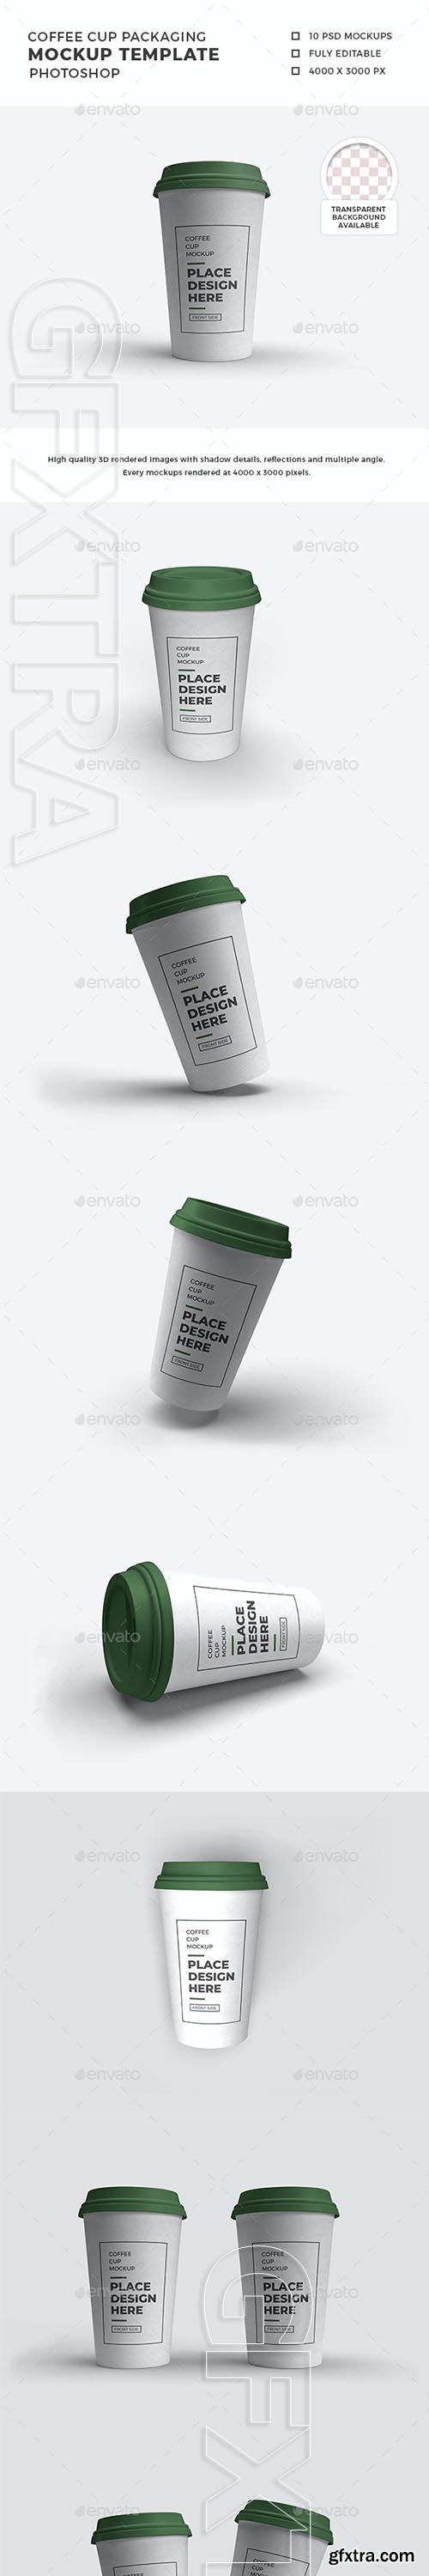 Coffee Cup Packaging Mockup Template Set 29925155